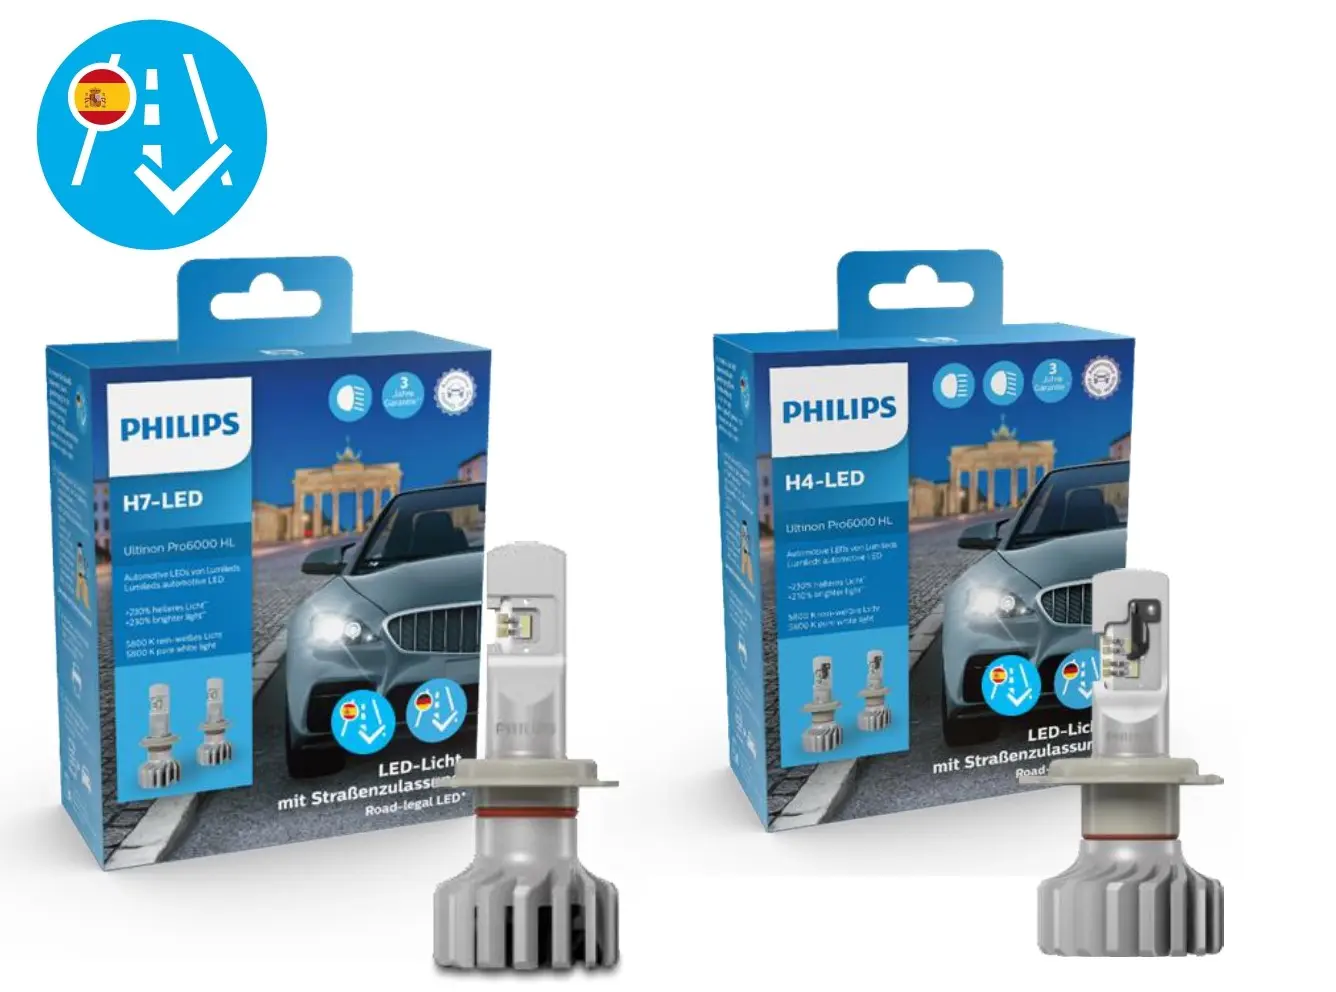 PHILIPS Ultinon Pro6000 LED HL Lámparas homologadas para uso en